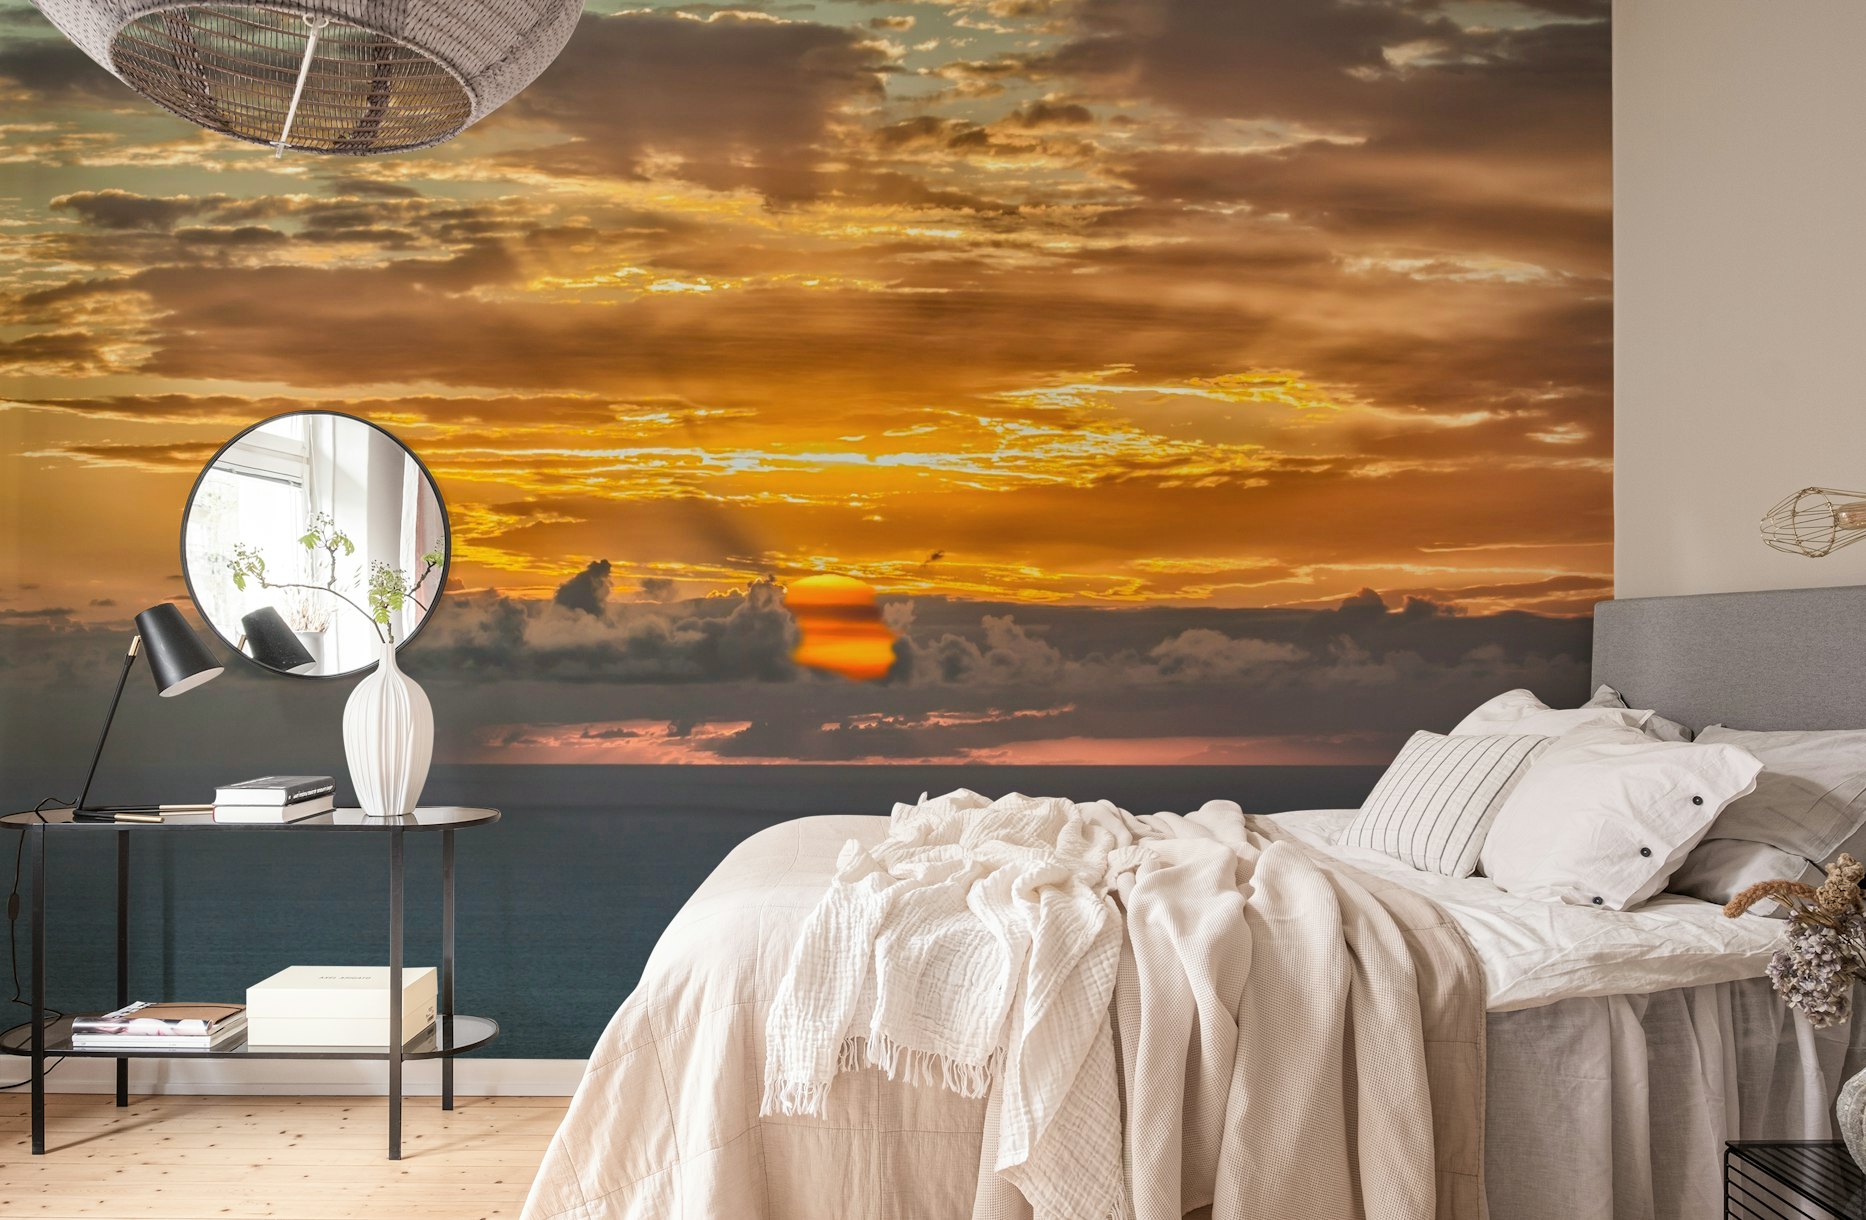 Sunrise over the sea wallpaper